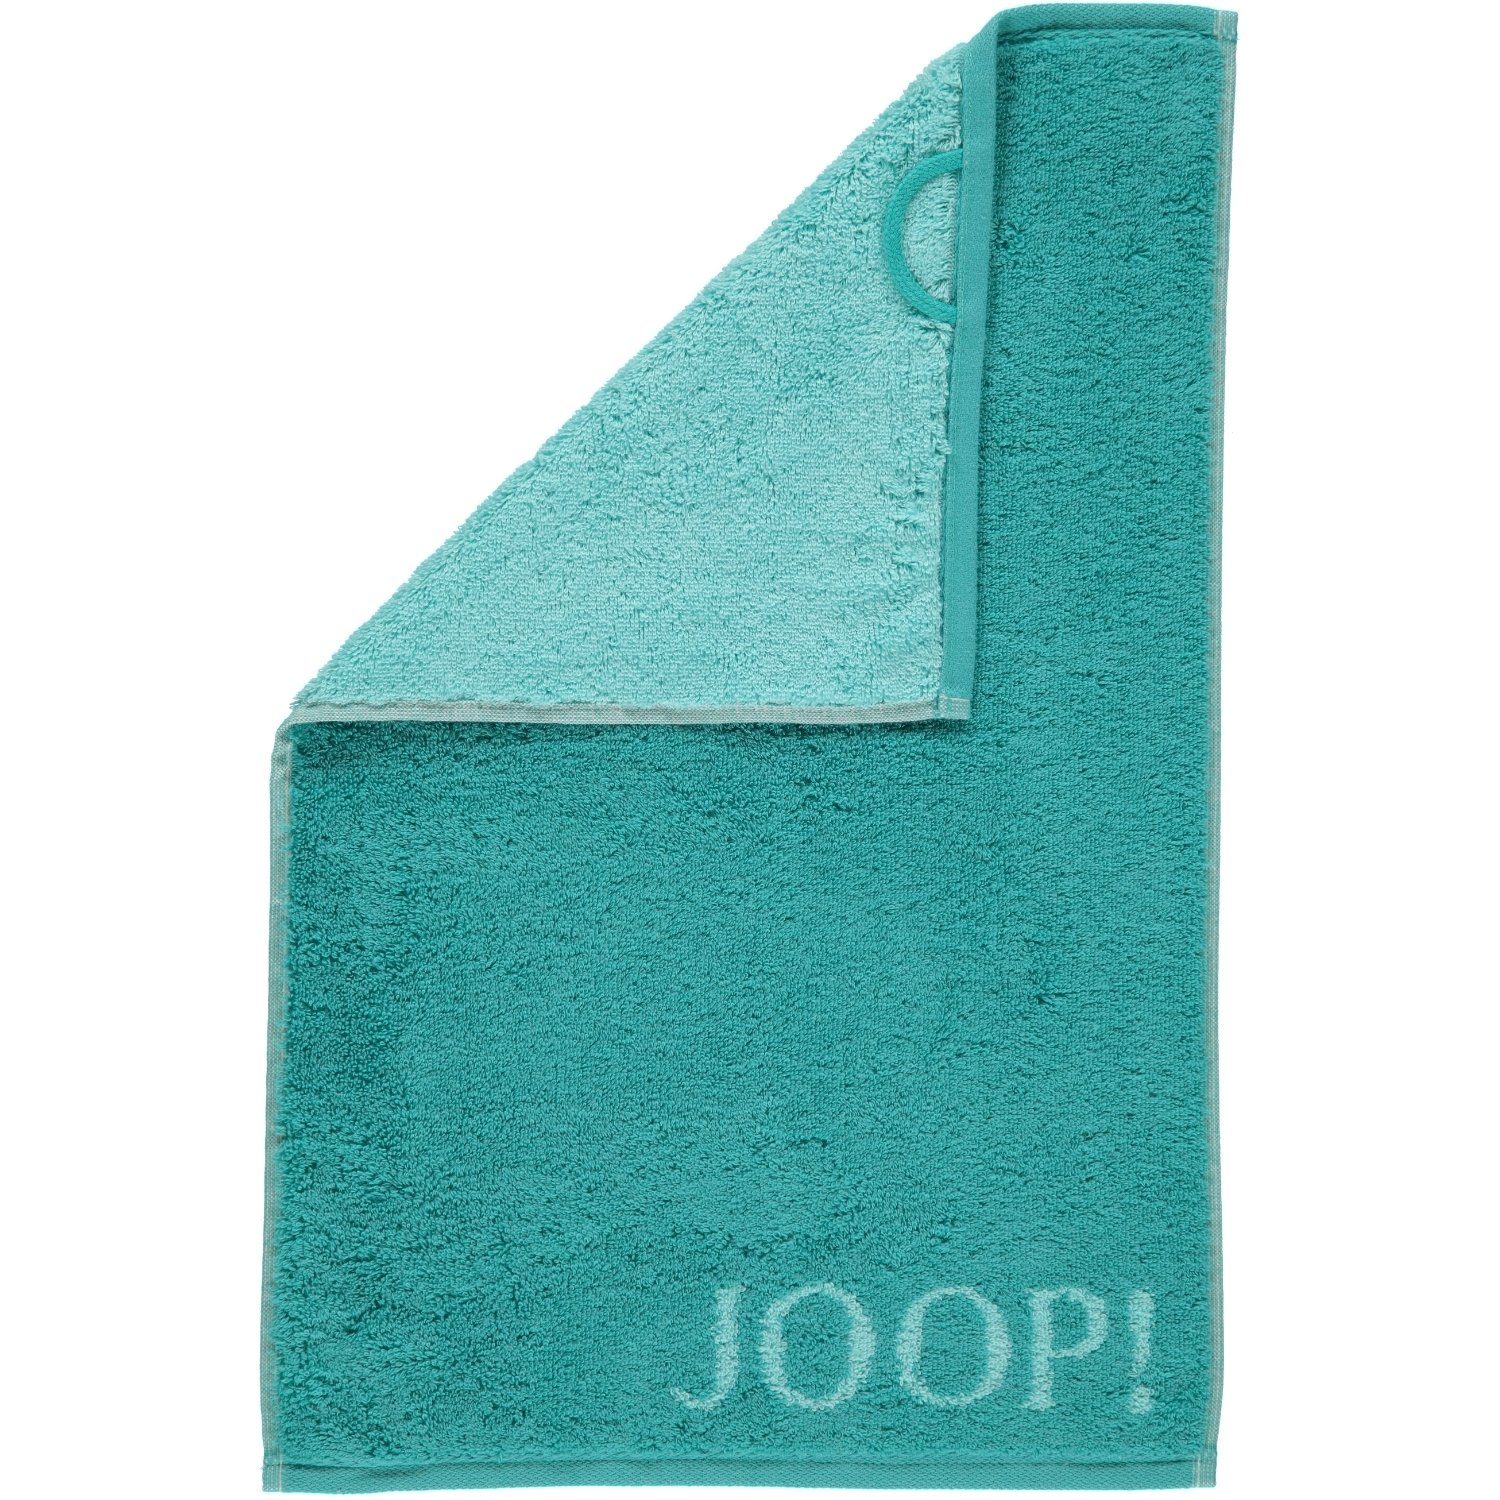 Joop! Handtücher Classic Doubleface 1600, 100% Baumwolle türkis - 40